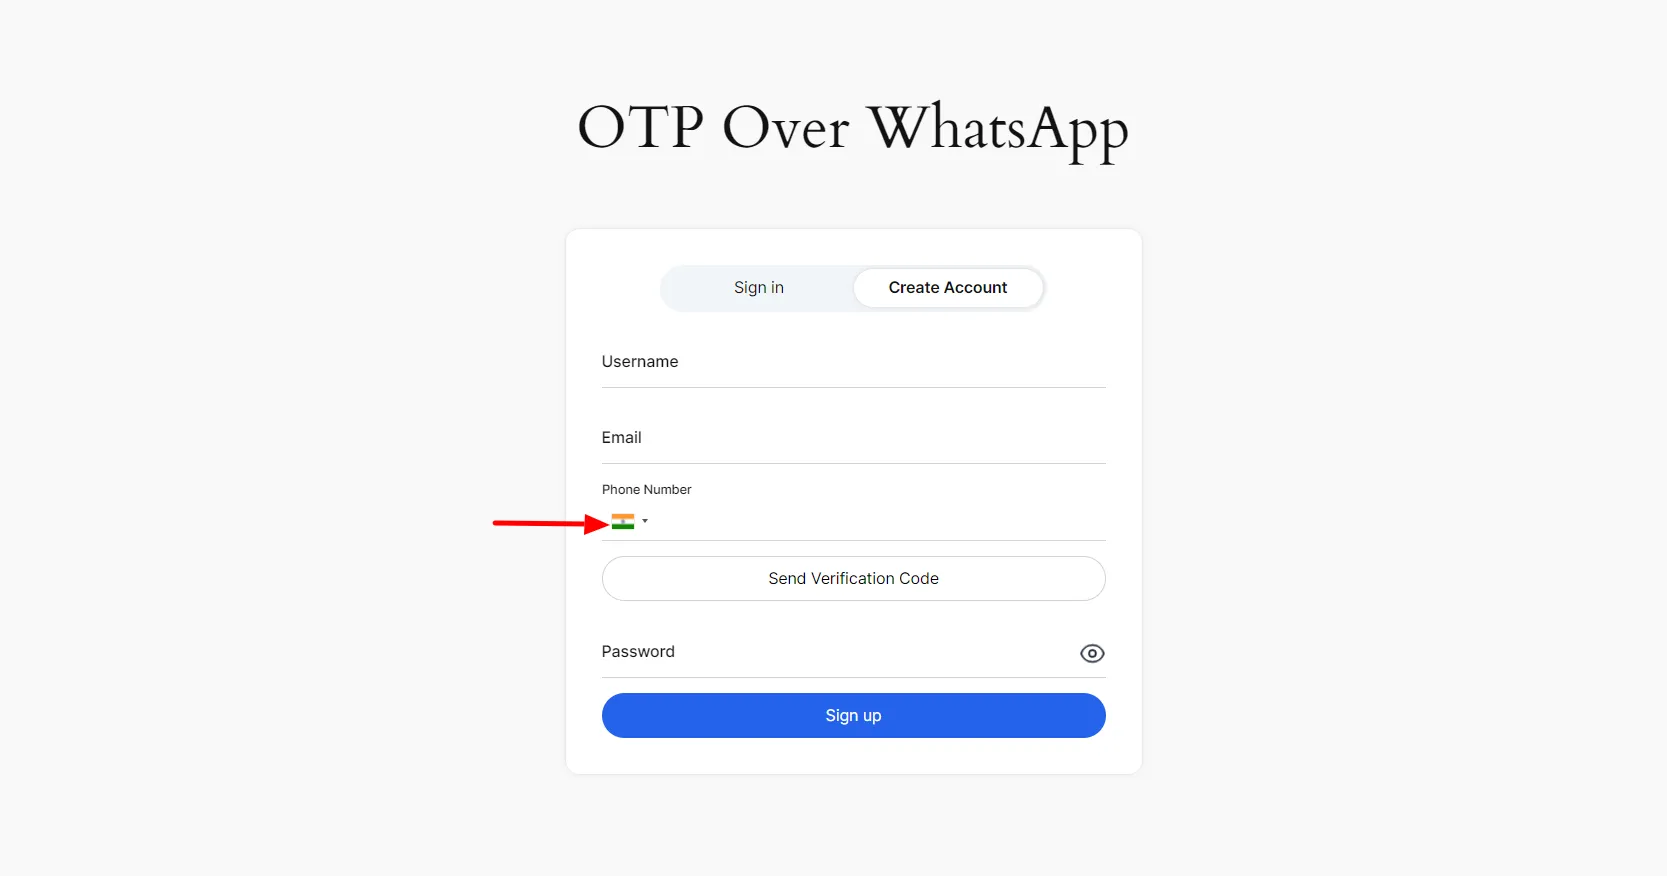 WhatsApp-Anmeldung mit OTP – Dropdown-Liste mit Ländercodes